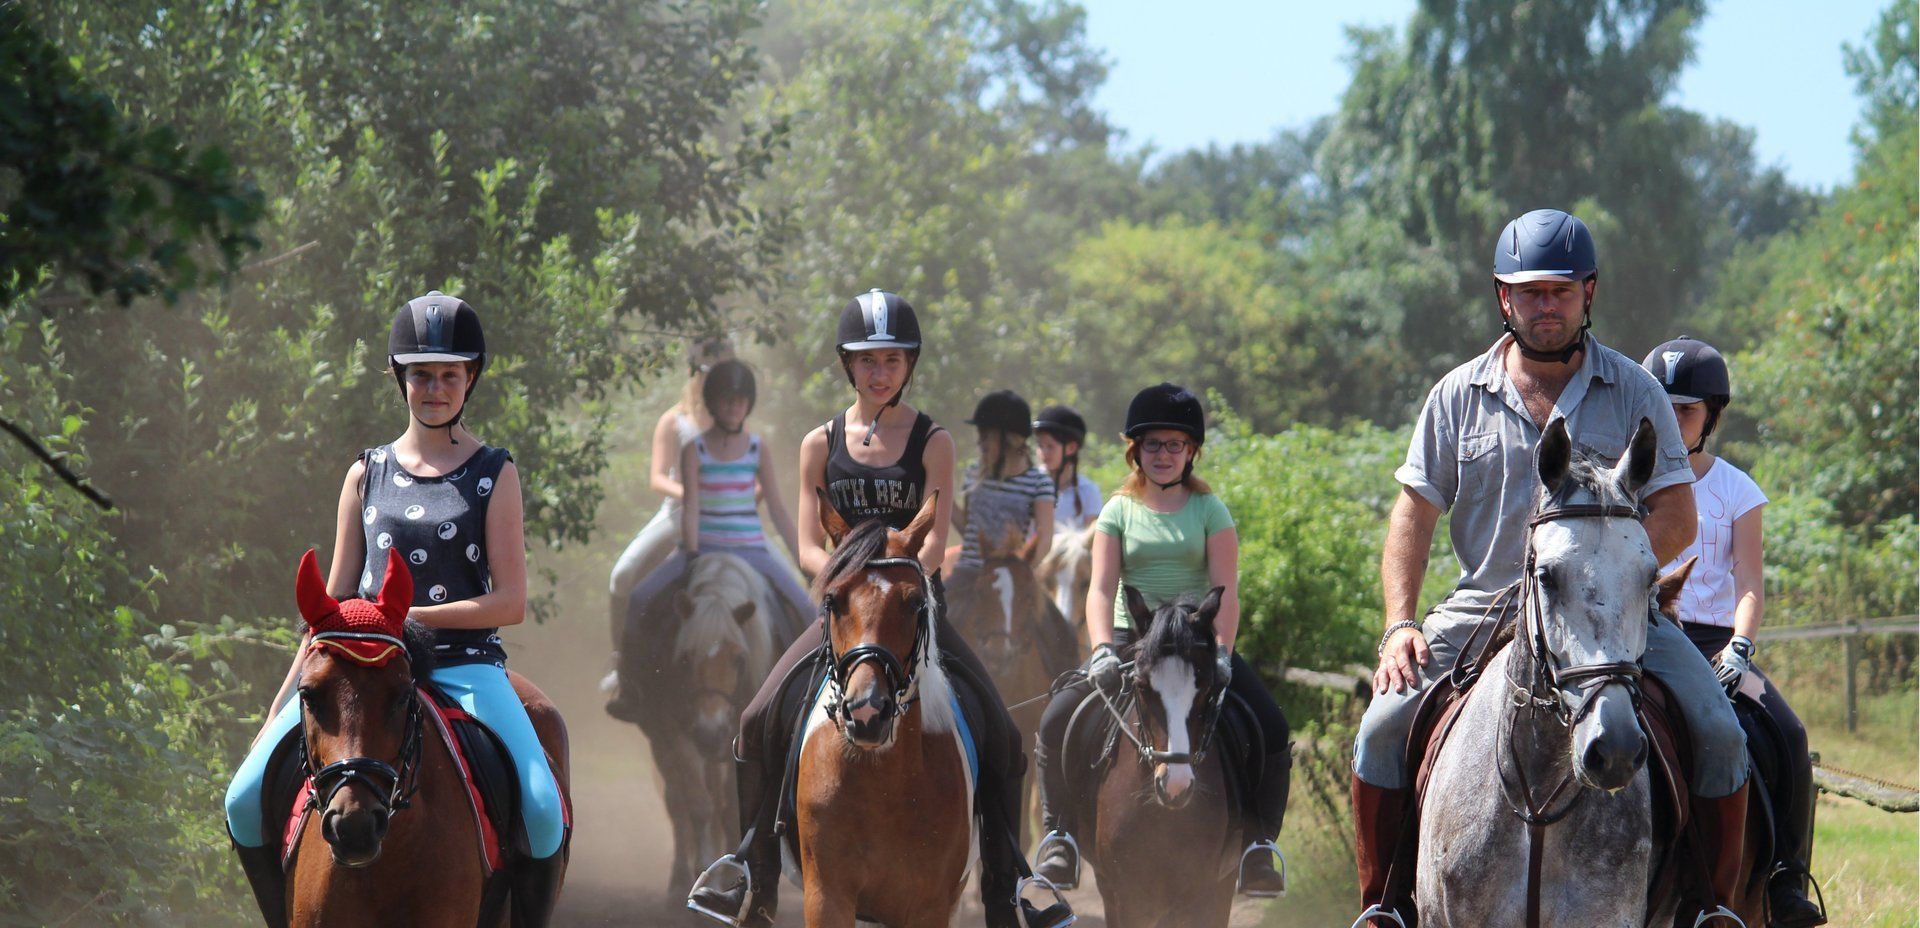 Leren paardrijden voor beginners en gevorderde ruiters